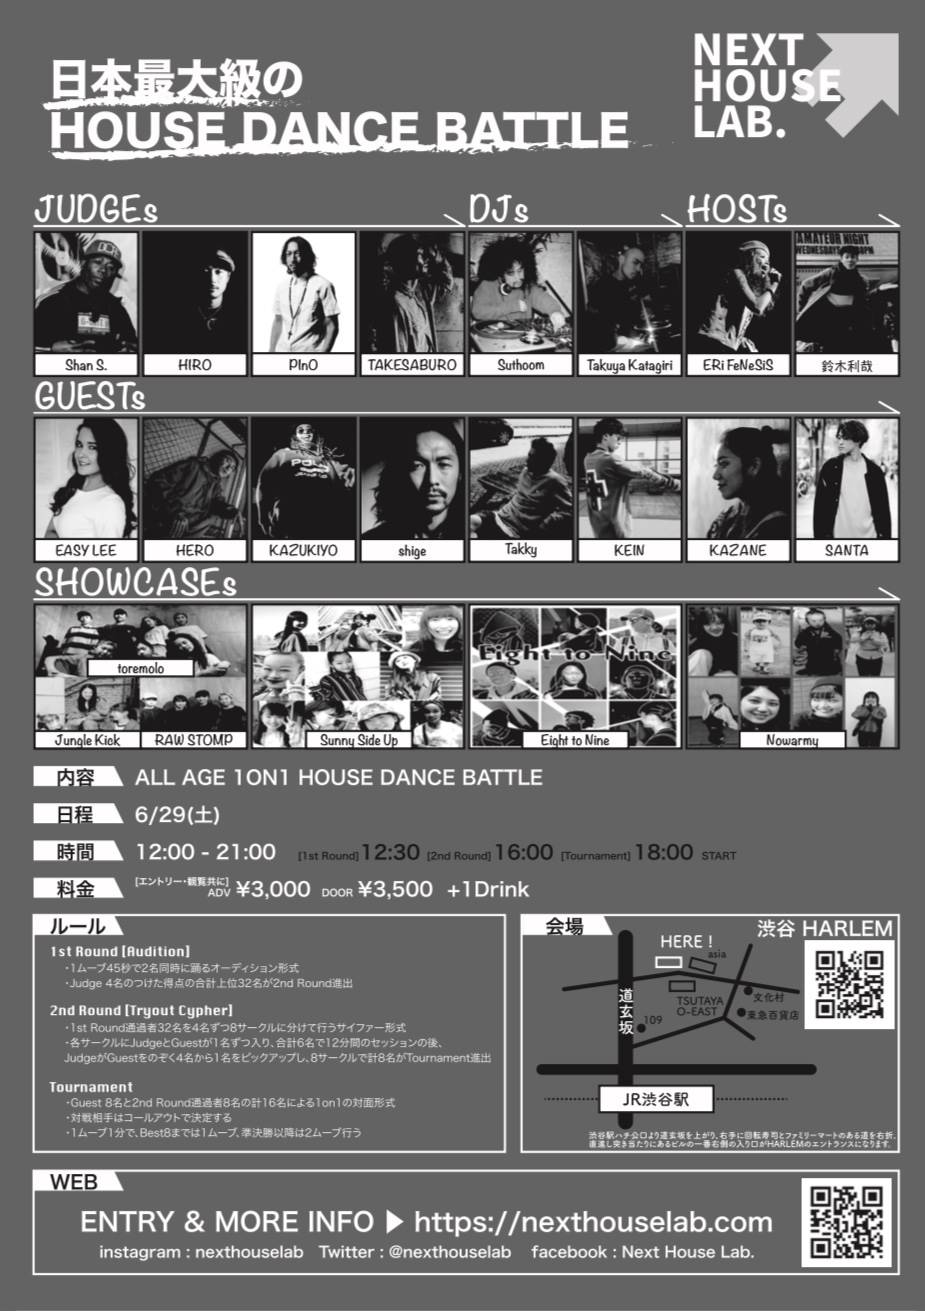 6/29（土）「Next House Lab.」が東京・渋谷HERLEMにて初開催 – ALMAのHIROとLunaticKが主催する、世界的ダンサーを一挙に見れる”日本最大級”の”1 on 1 HOUSE DANCEバトルイベント” – ルーキーのエントリーも続々、渋谷にレジェンドが集結。海外ゲストダンサー前日WSも